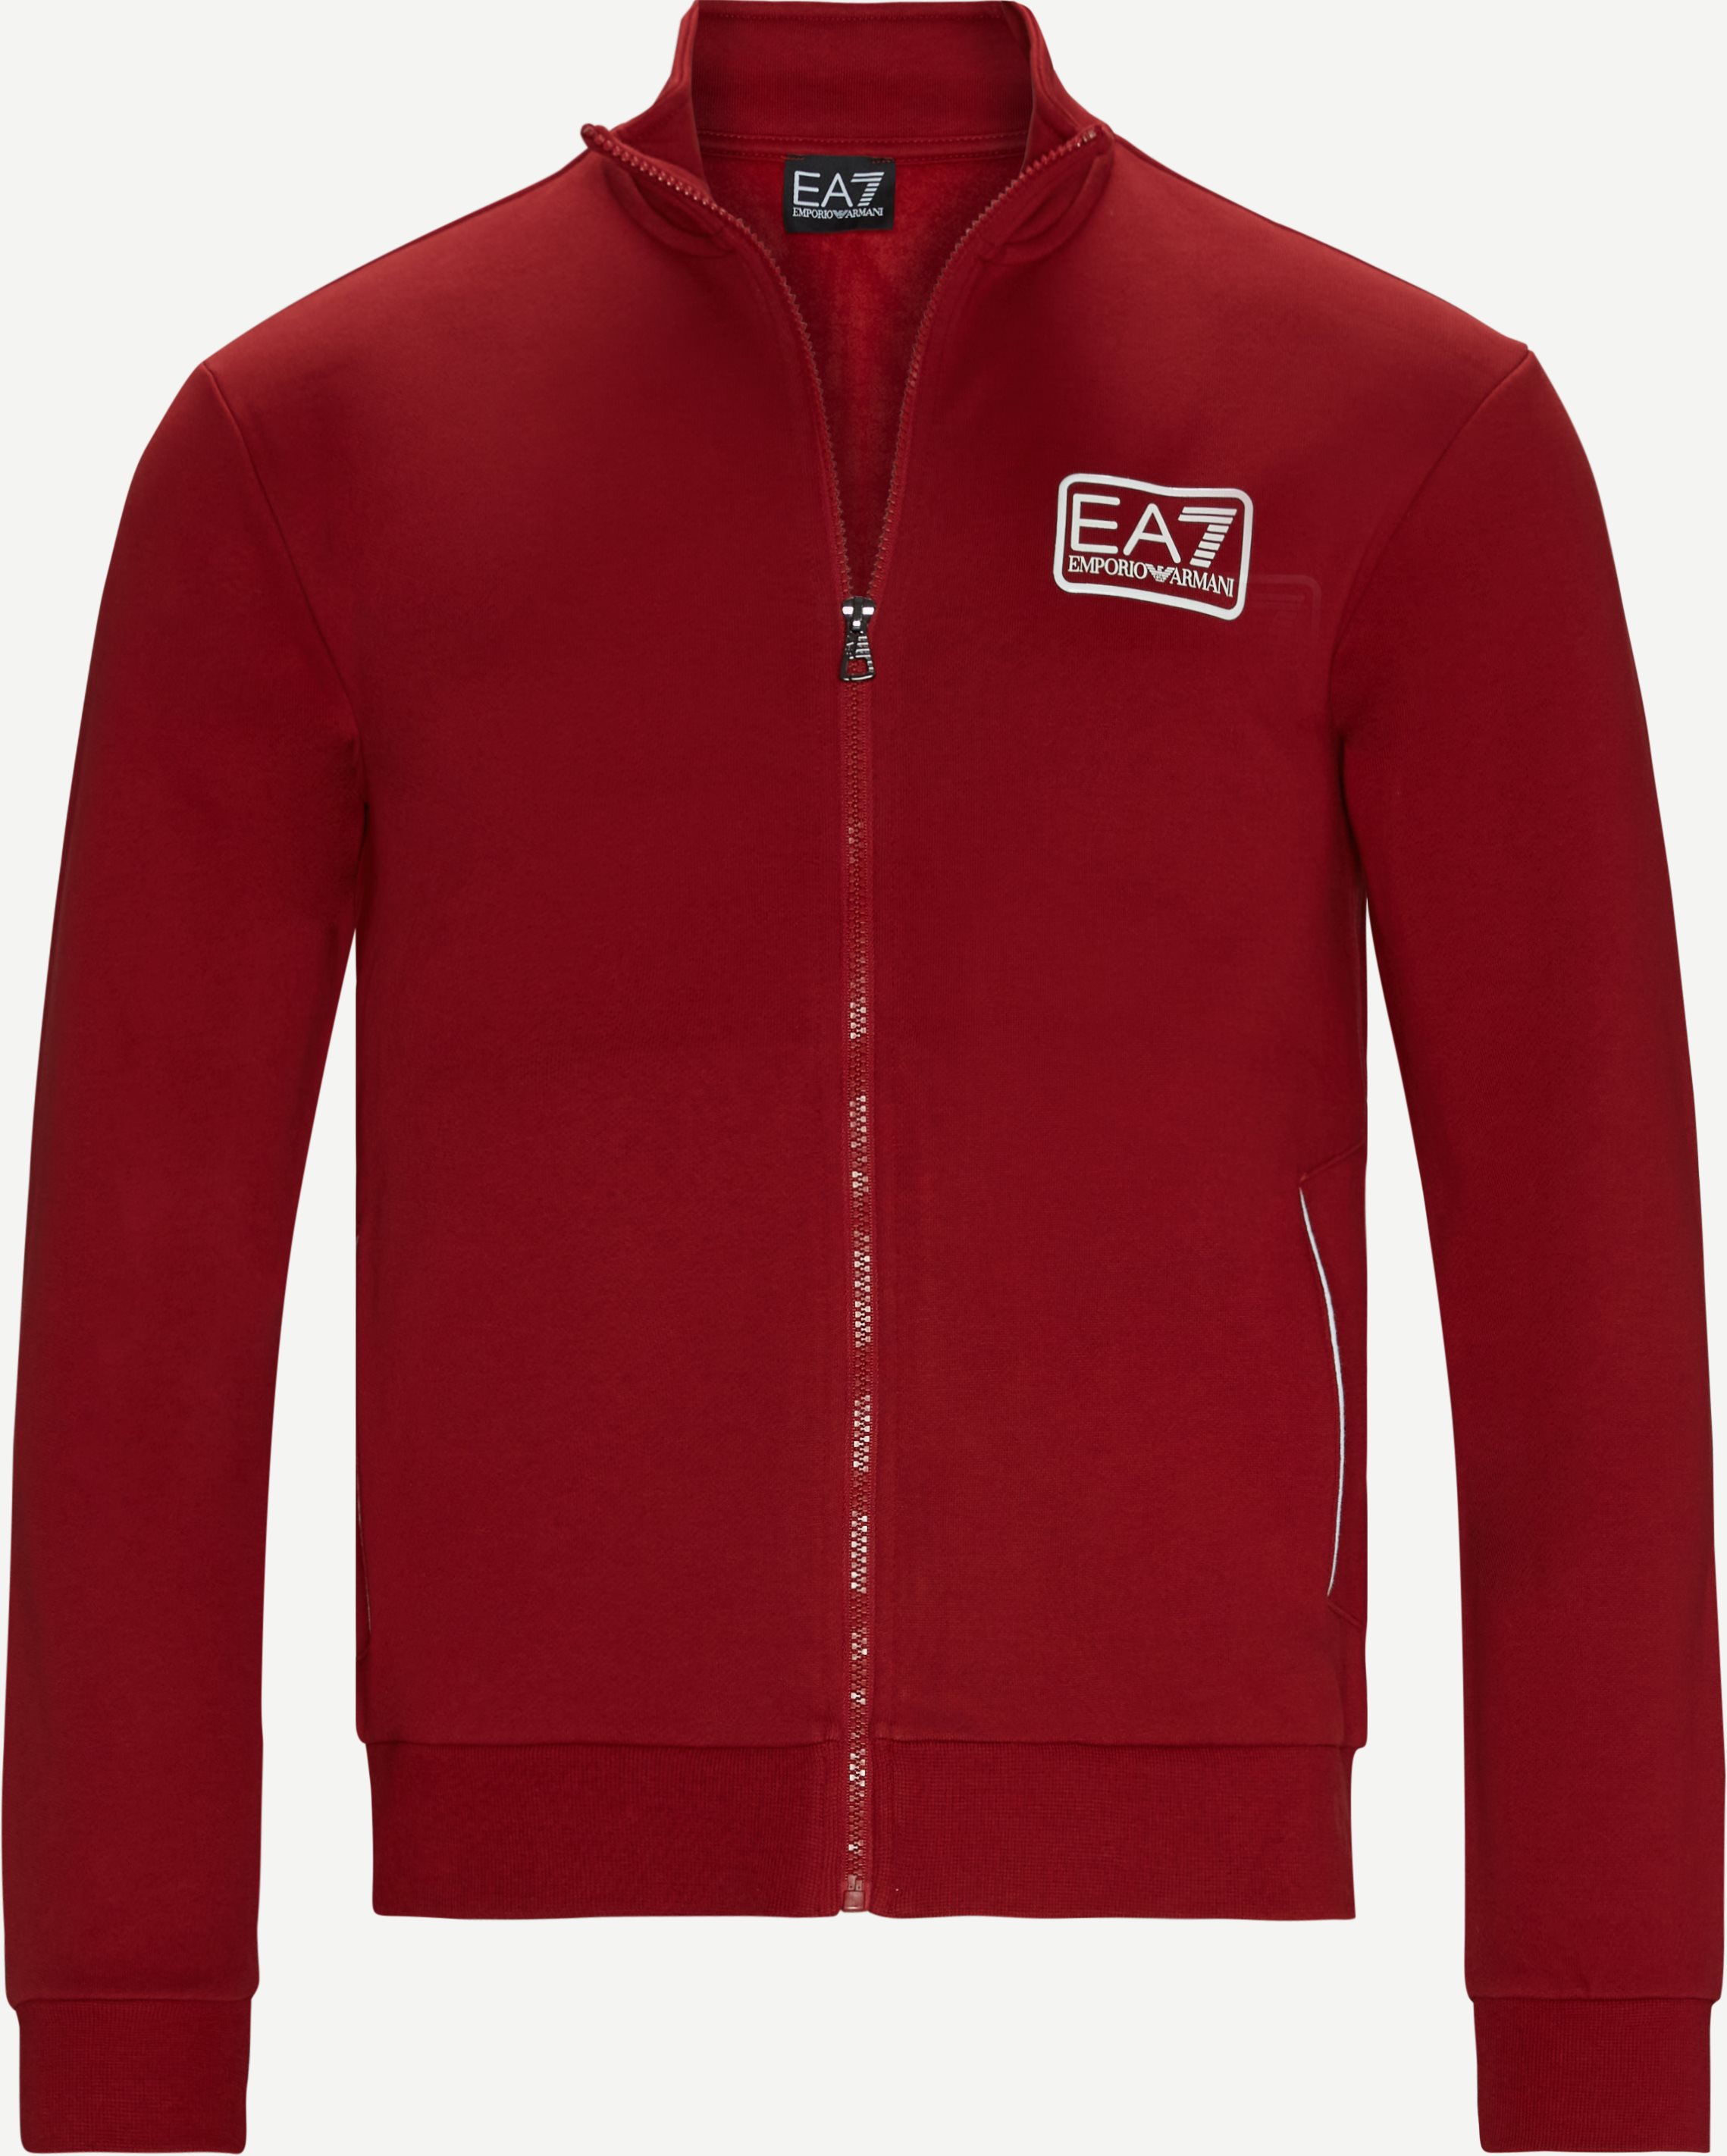 6KPV67 tröja - Sweatshirts - Regular fit - Röd